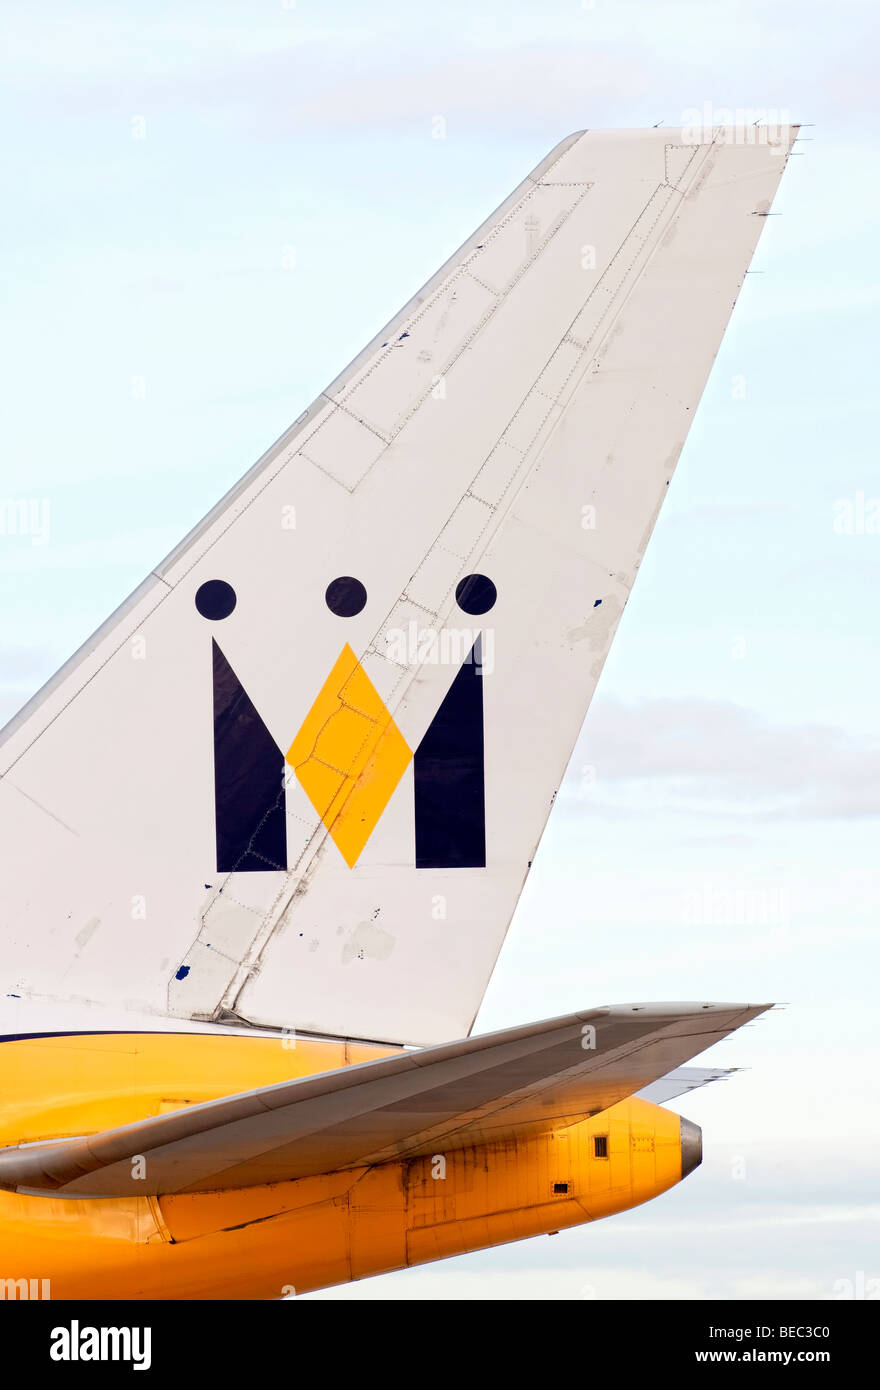 Pinna di coda di un monarca aeromobile come i taxi per il decollo dall'aeroporto di Manchester (ringway airport) a Manchester in Inghilterra Foto Stock